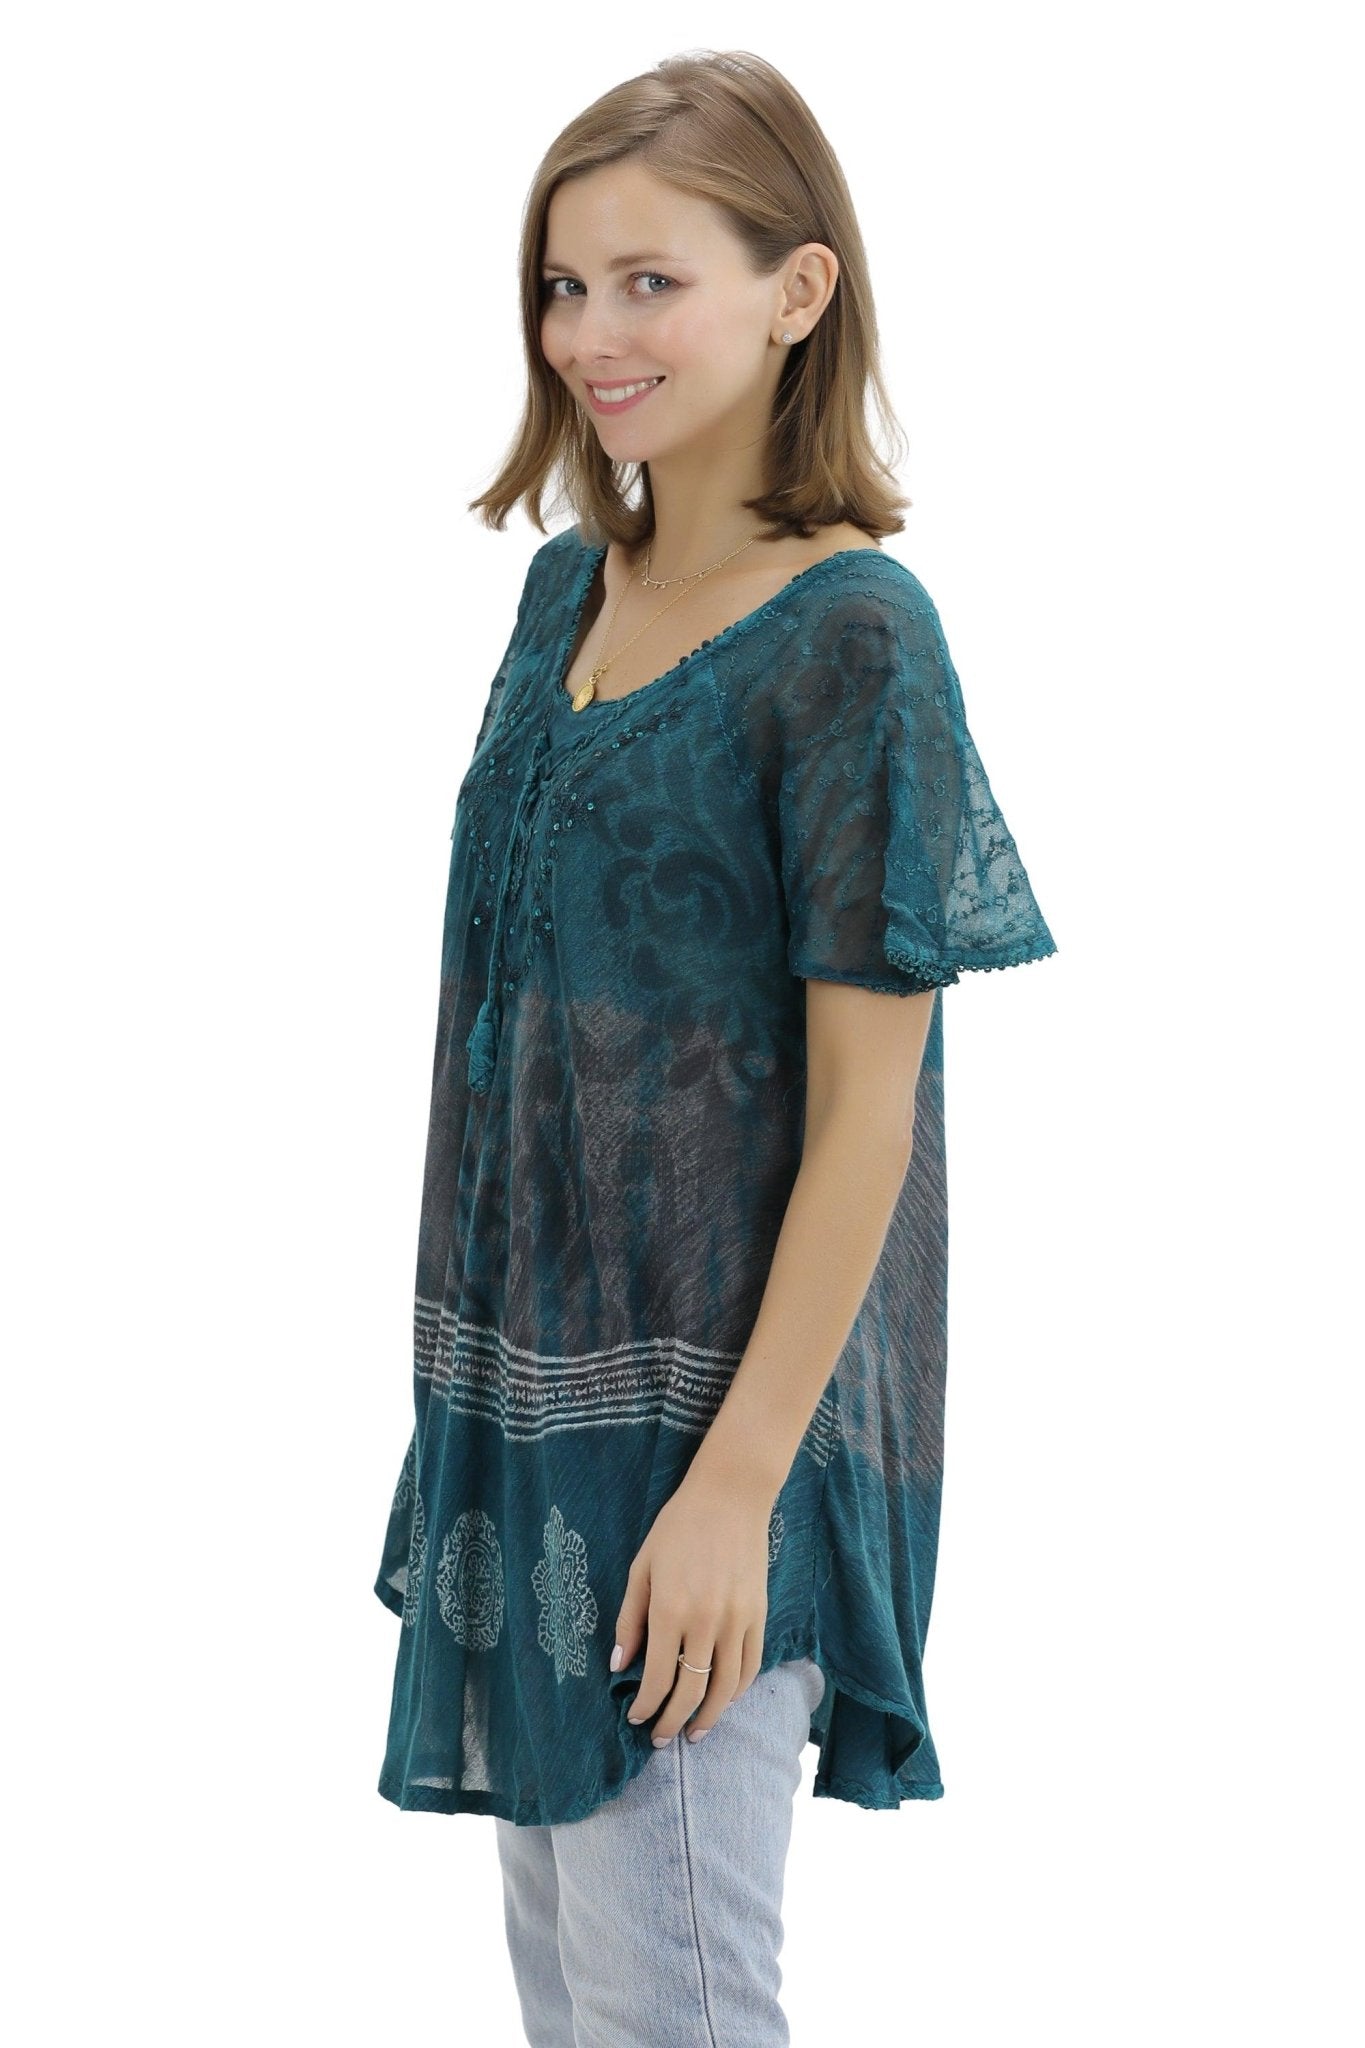 Batik Print Tie Dye Cap Sleeve Blouse 17877 - Advance Apparels Inc